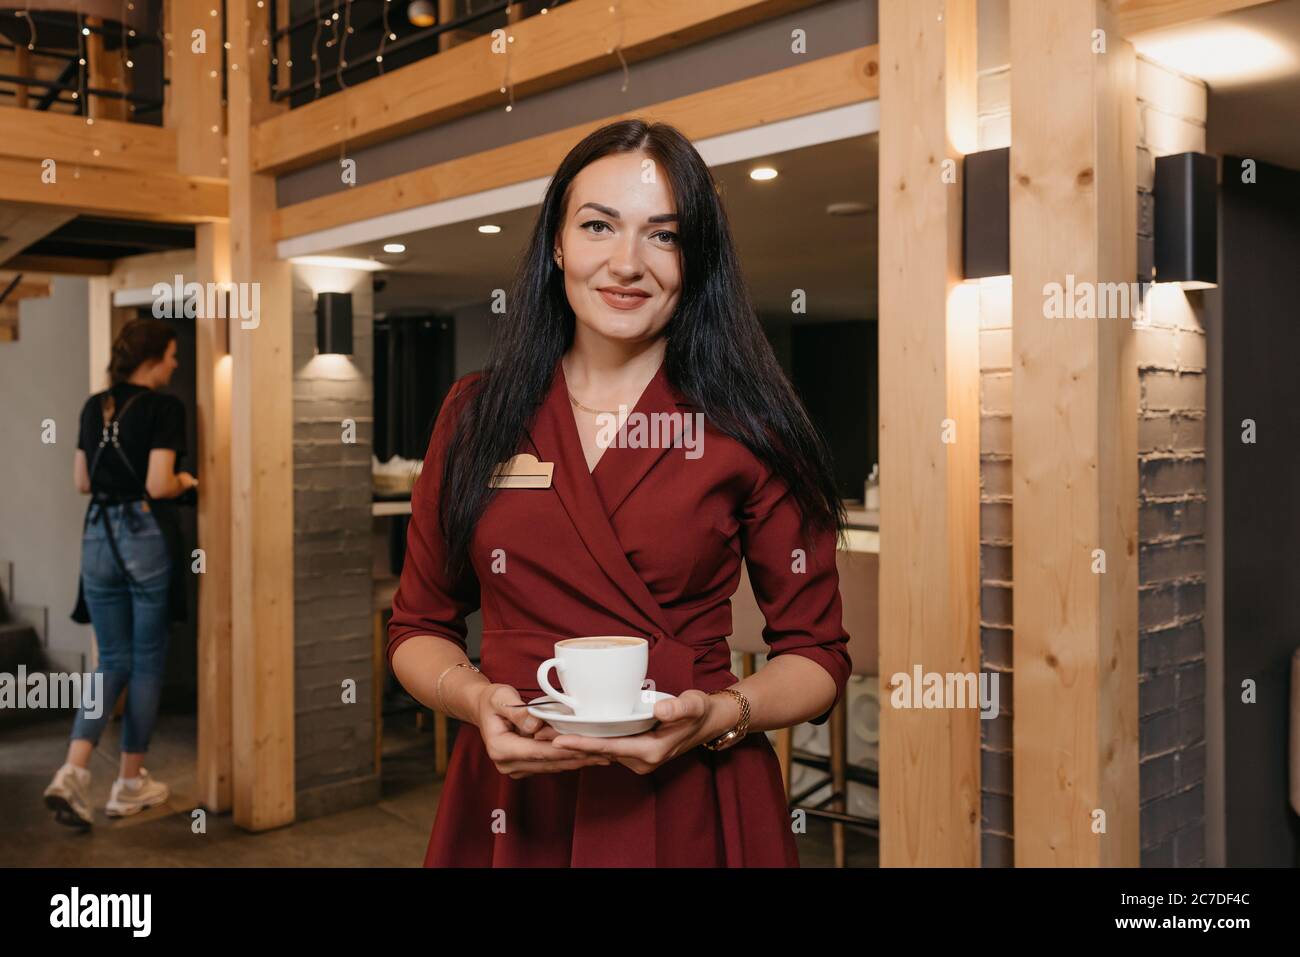 Una splendida manager di un ristorante femminile sta tenendo una tazza di caffè in un ristorante. Un gentile proprietario di un caffè in un abito rubino sta aspettando un cliente. Foto Stock